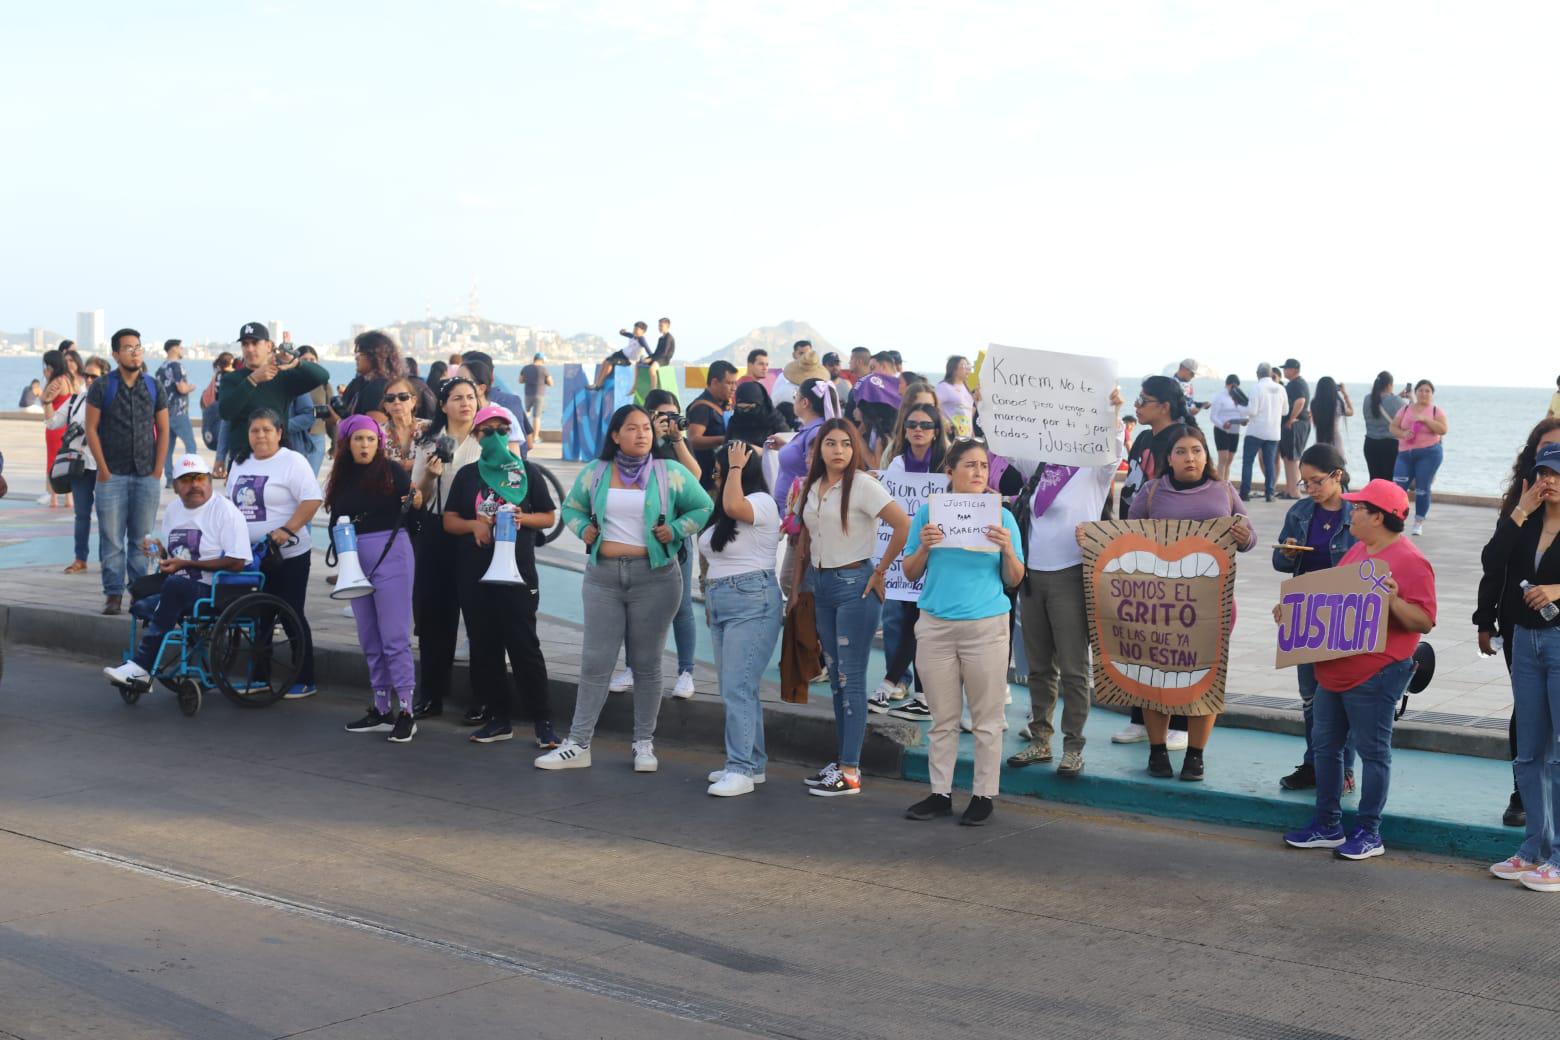 $!Marchan en Mazatlán para exigir justicia por el asesinato de Karem